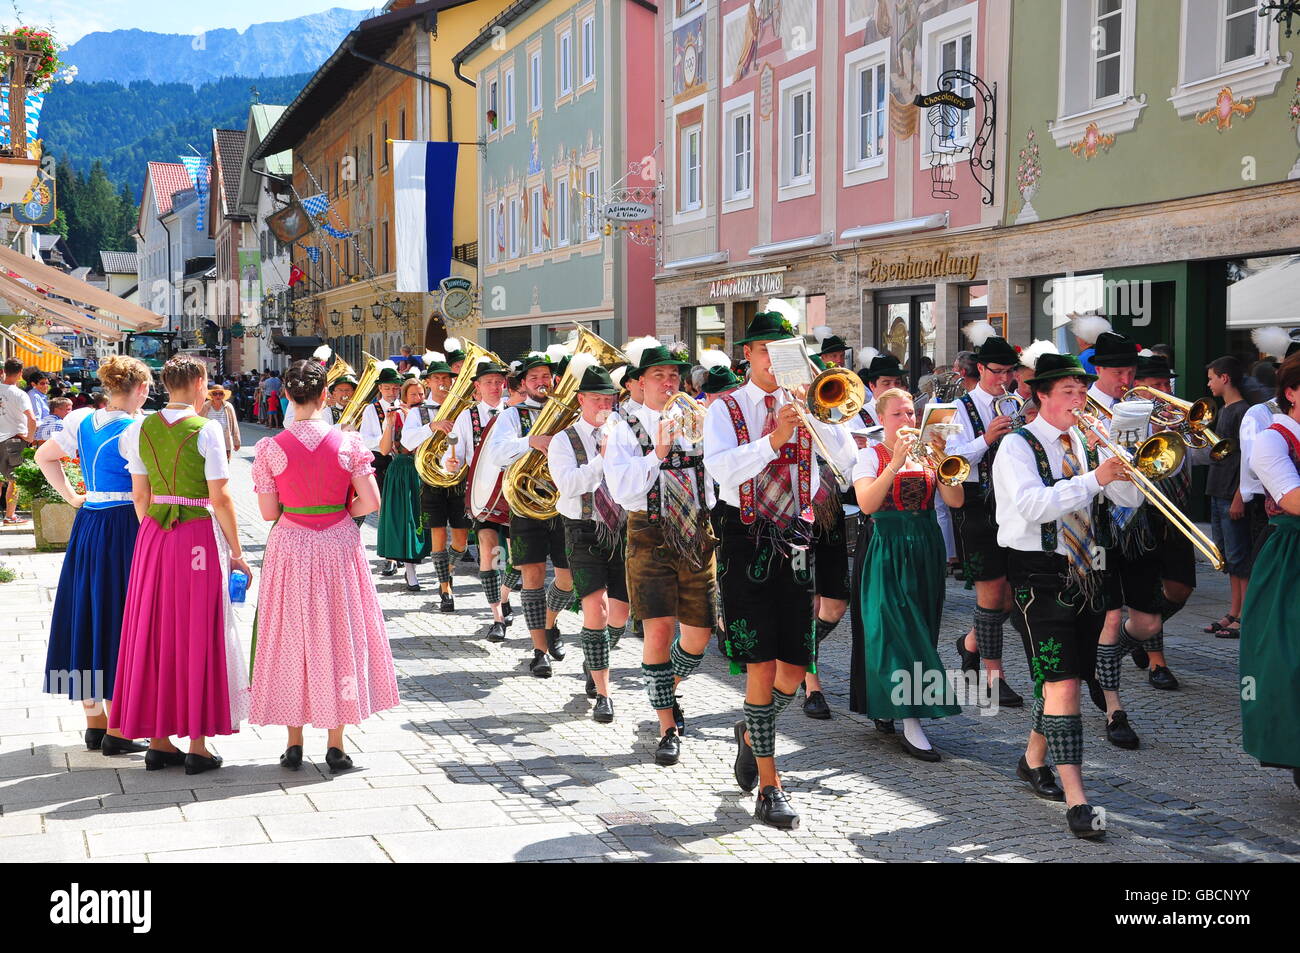 Trachtenumzug, Tracht, Musikkapelle, Garmisch-Partenkirchen, Bayern,  Deutschland Stockfotografie - Alamy